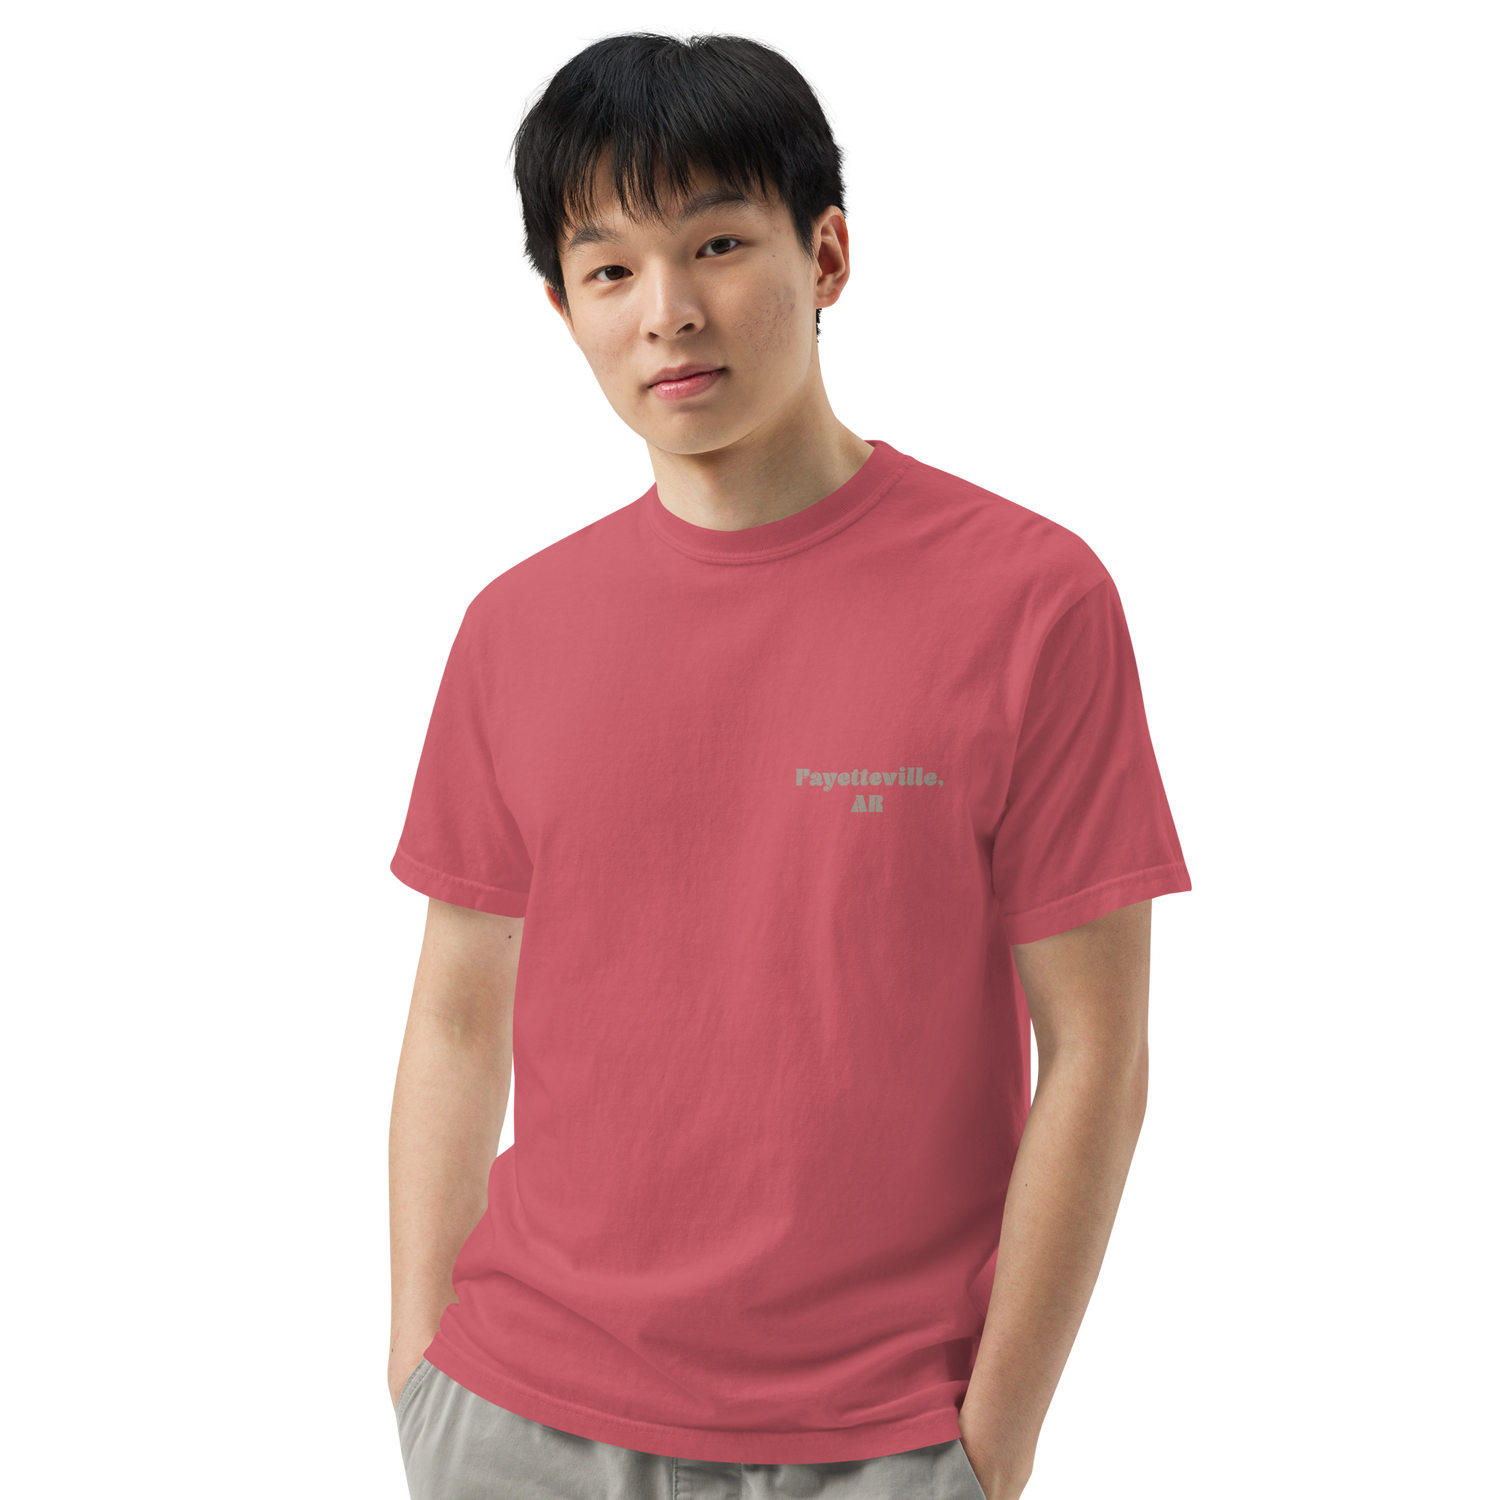 Dickson Street Back Print Men’s Garment-Dyed Heavyweight T-Shirt